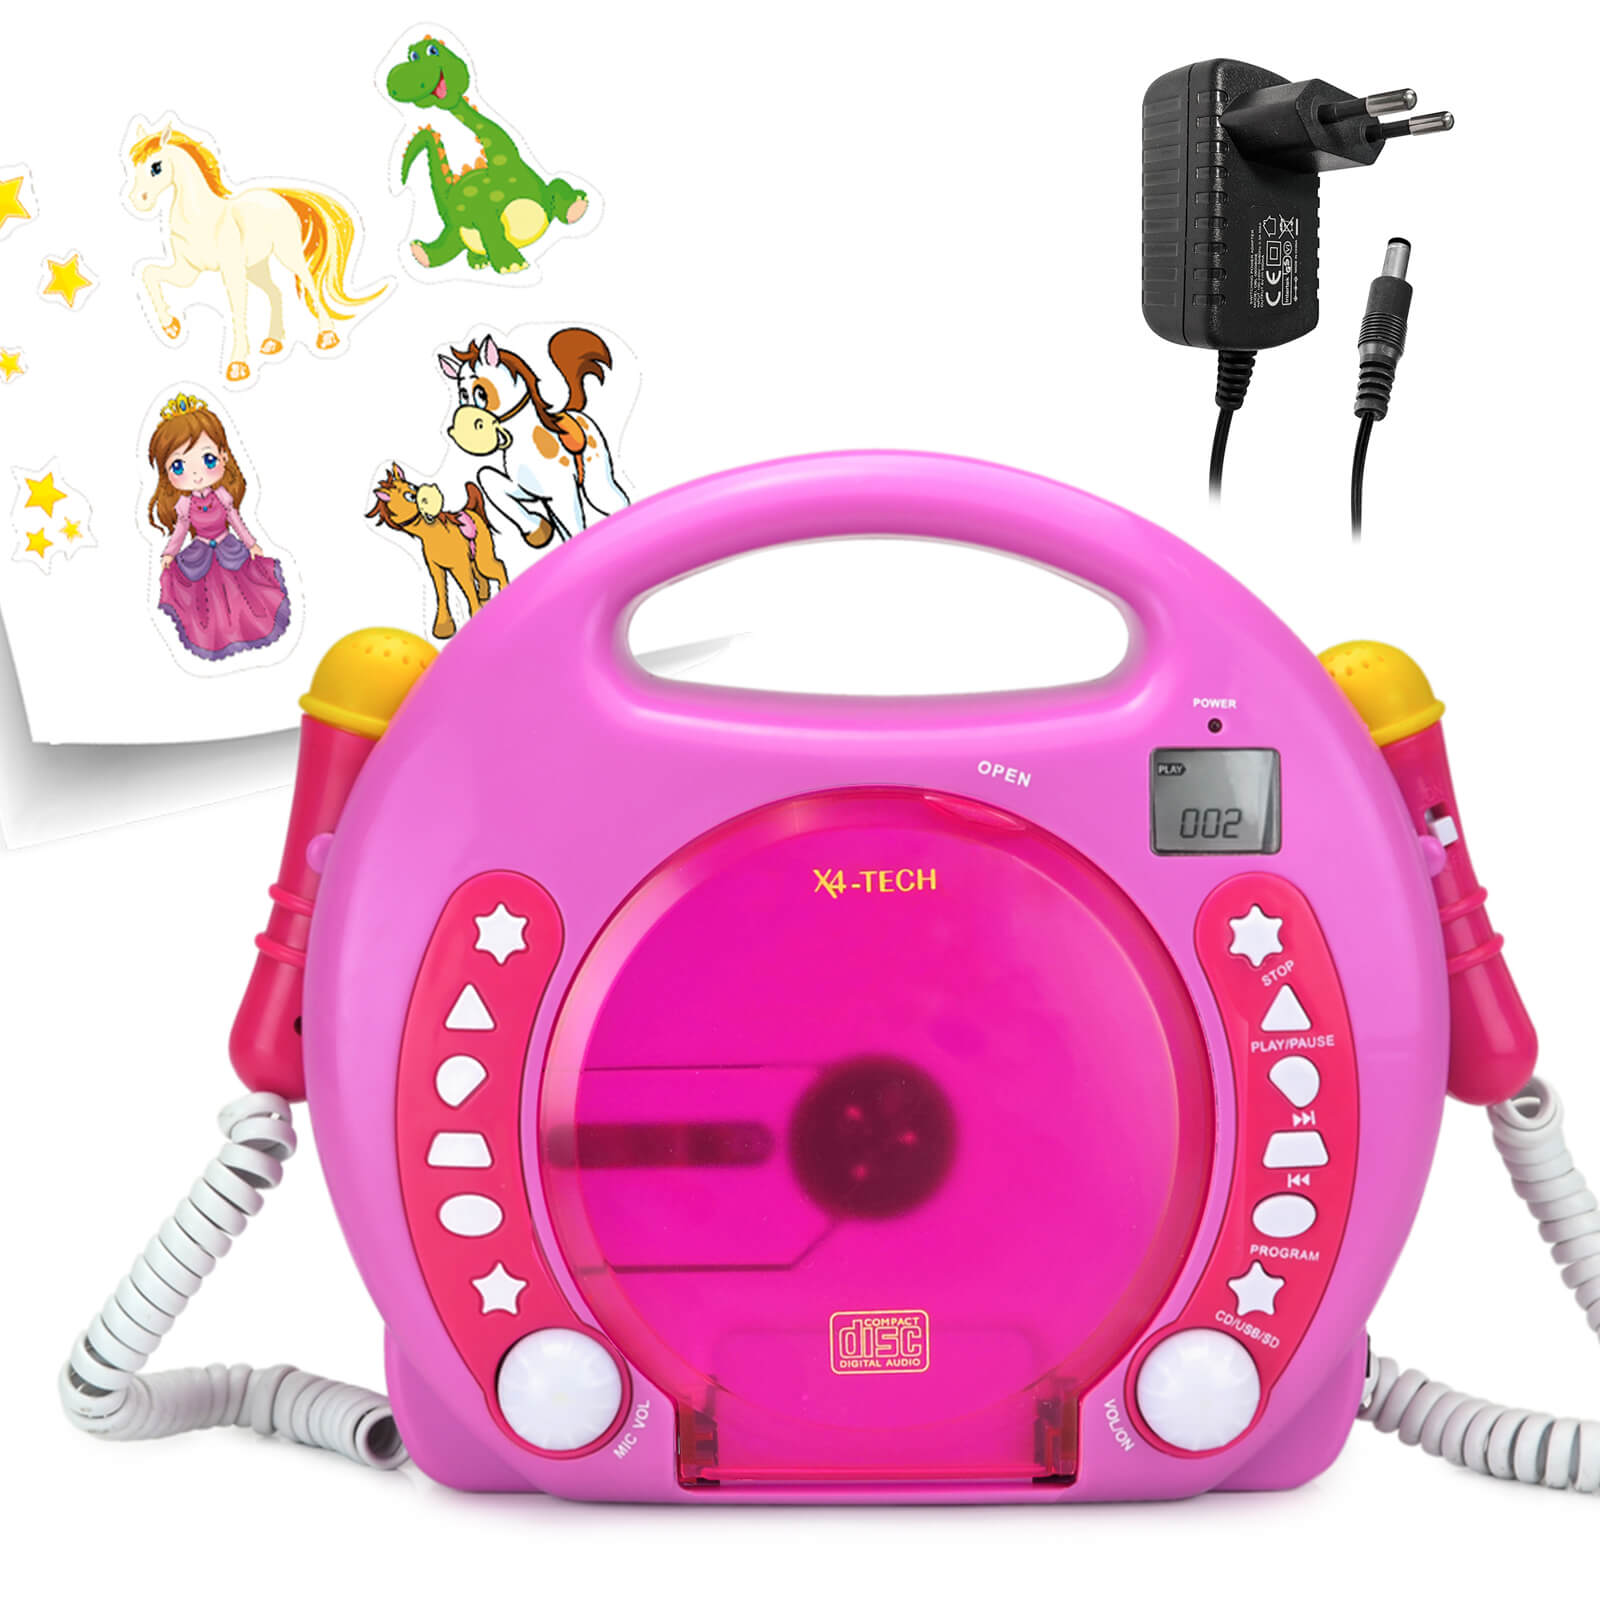 CD Player Karaoke für Kinder 2 Mikrofonen inkl. Sticker-Set Wiedergabe CD/USB/SD inkl. Steckernetzteil - pink